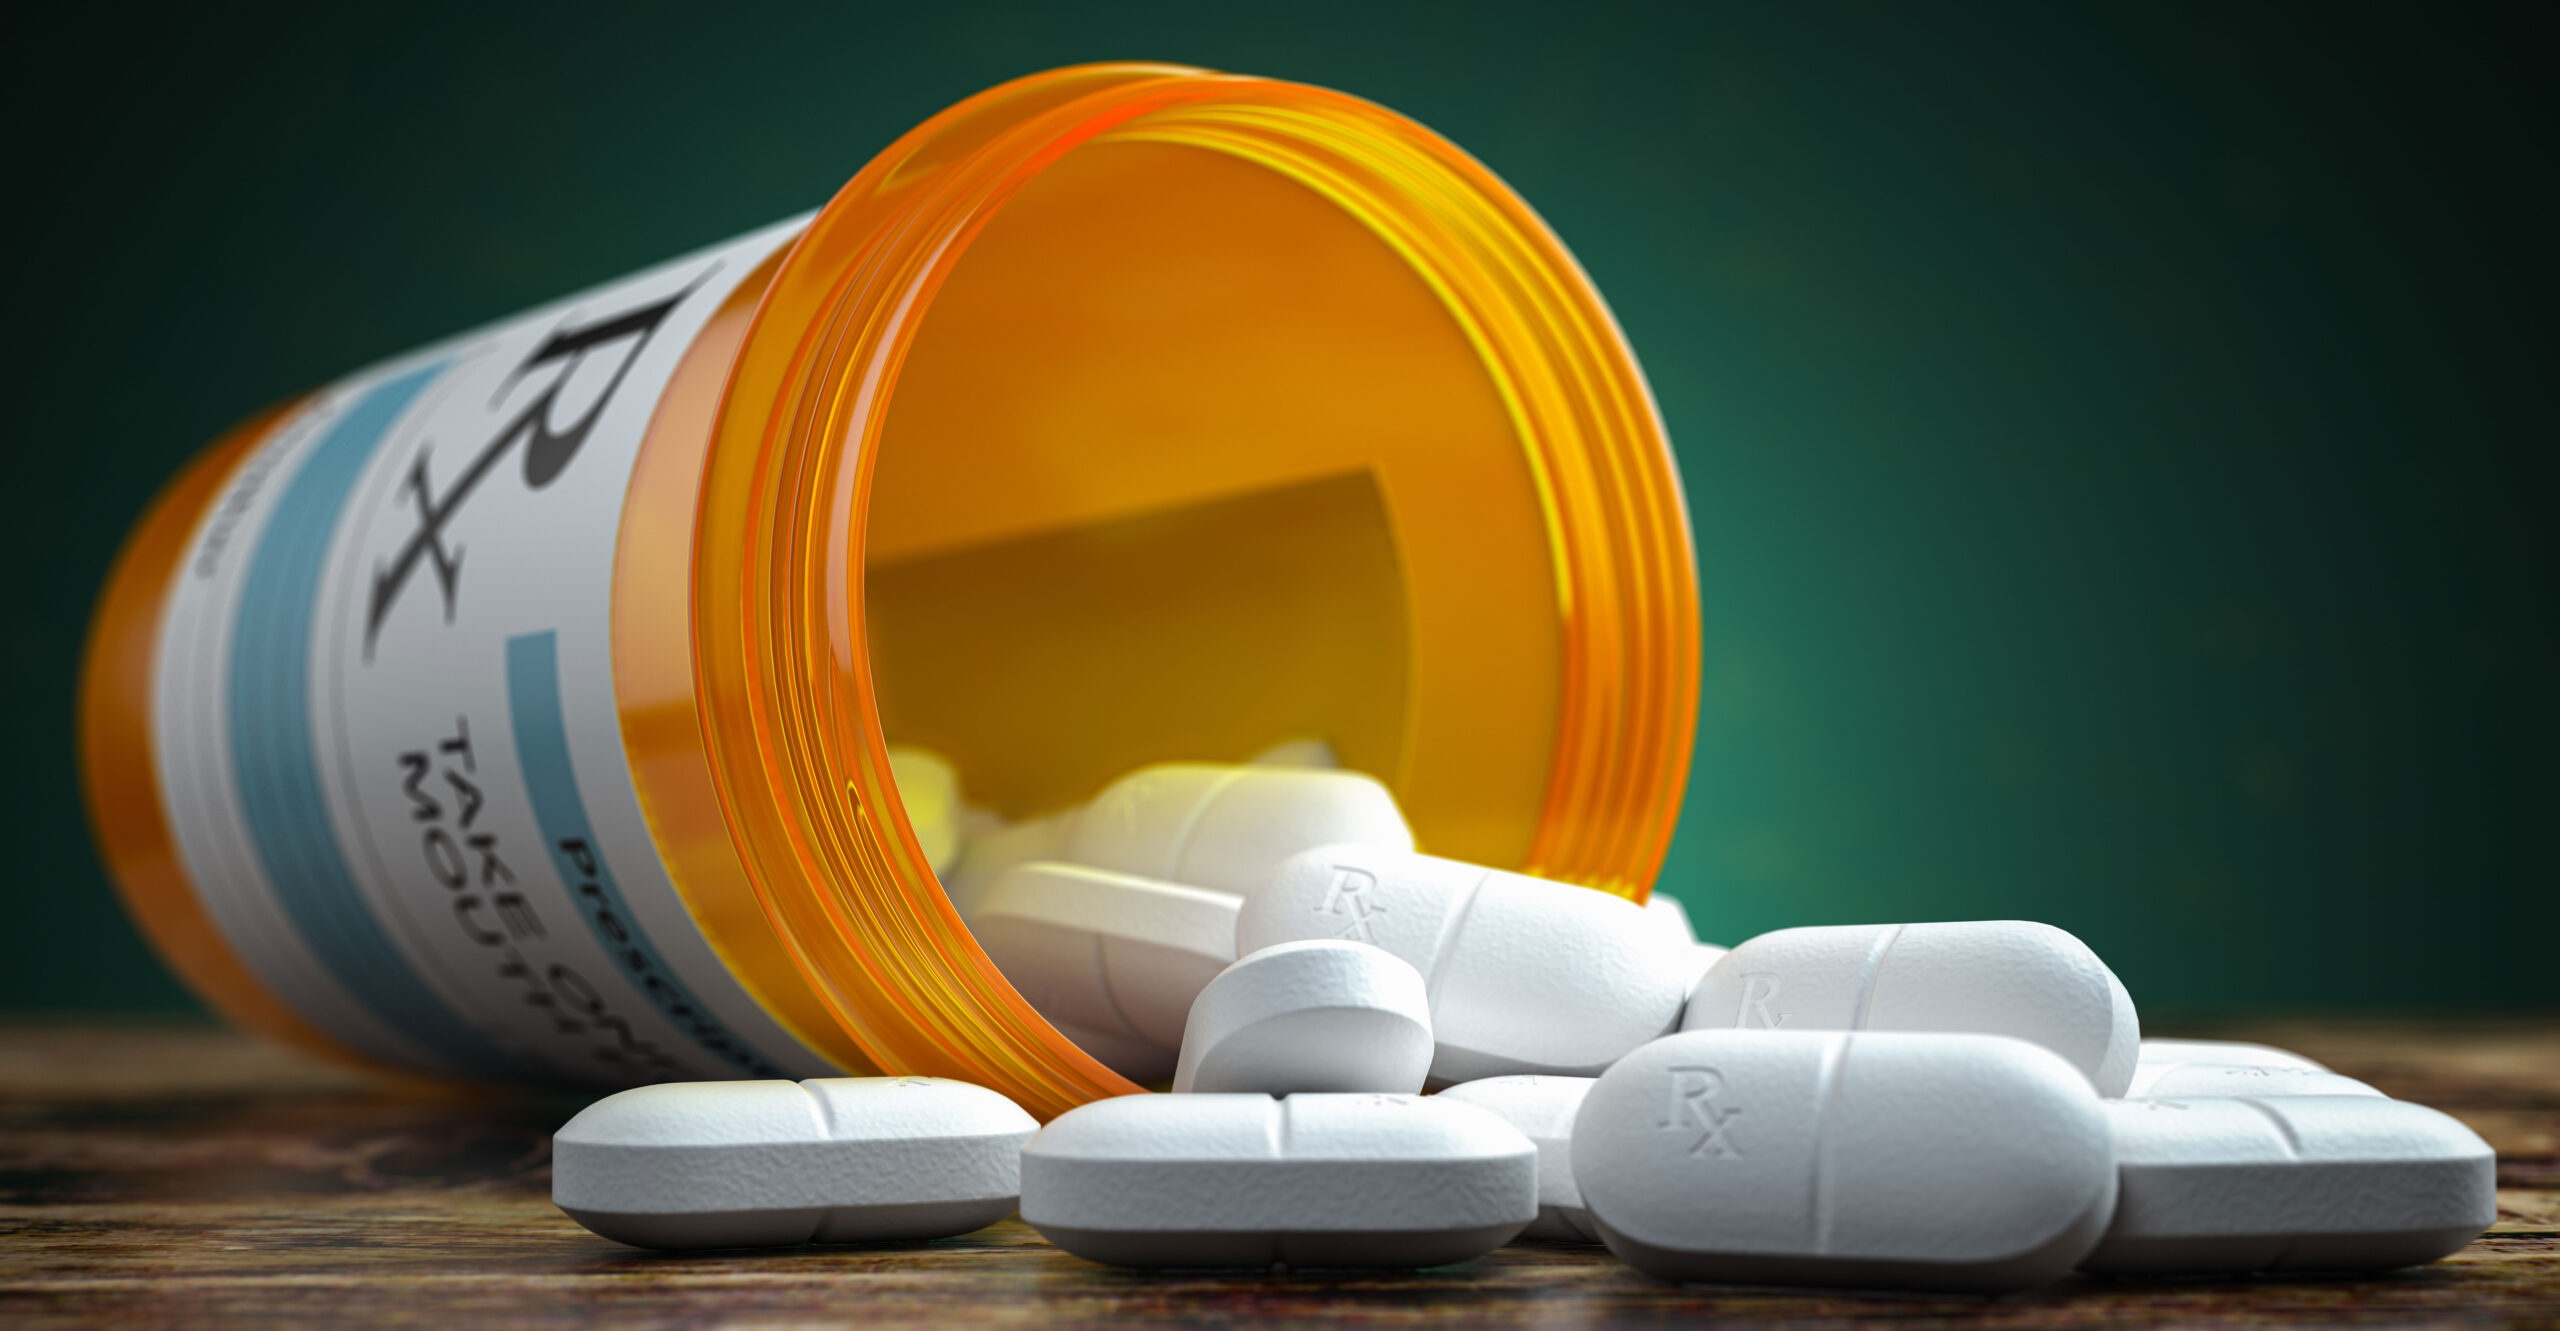 Government Control: Biden's Rx for Prescription Drugs Is Bad Medicine